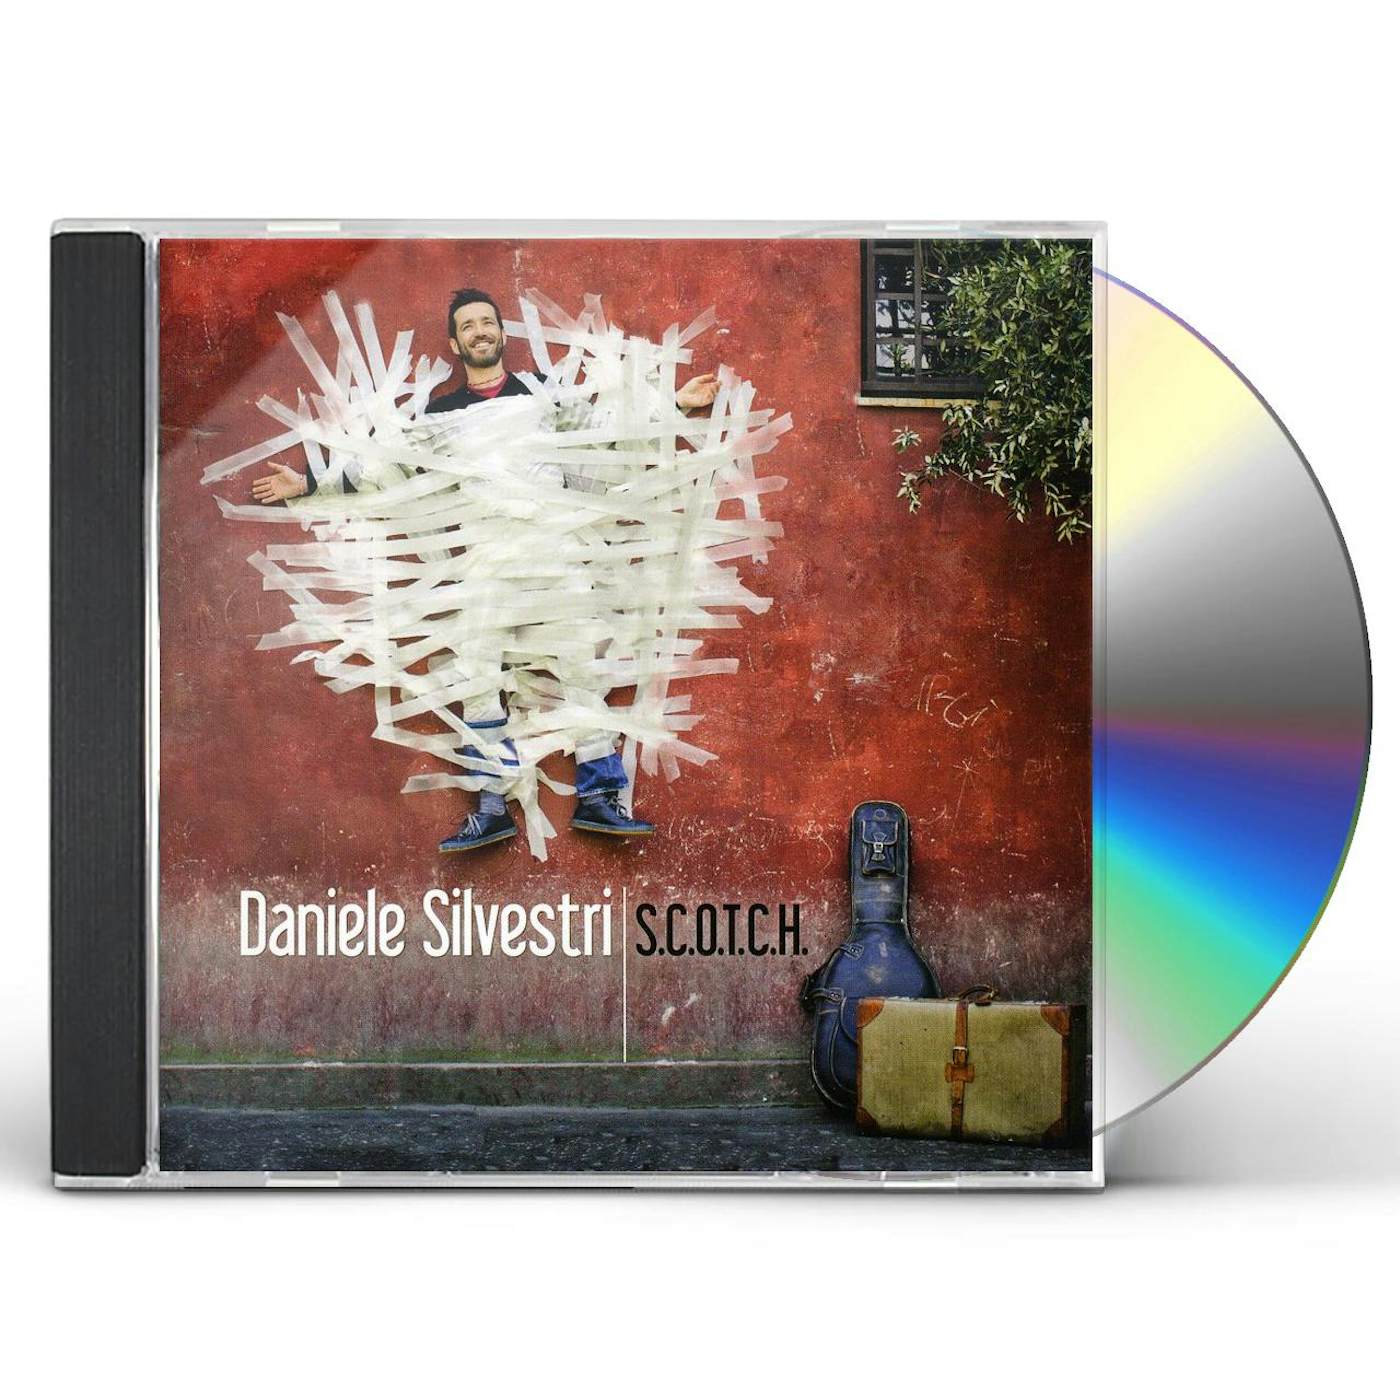 Daniele Silvestri S.C.O.T.C.H. CD